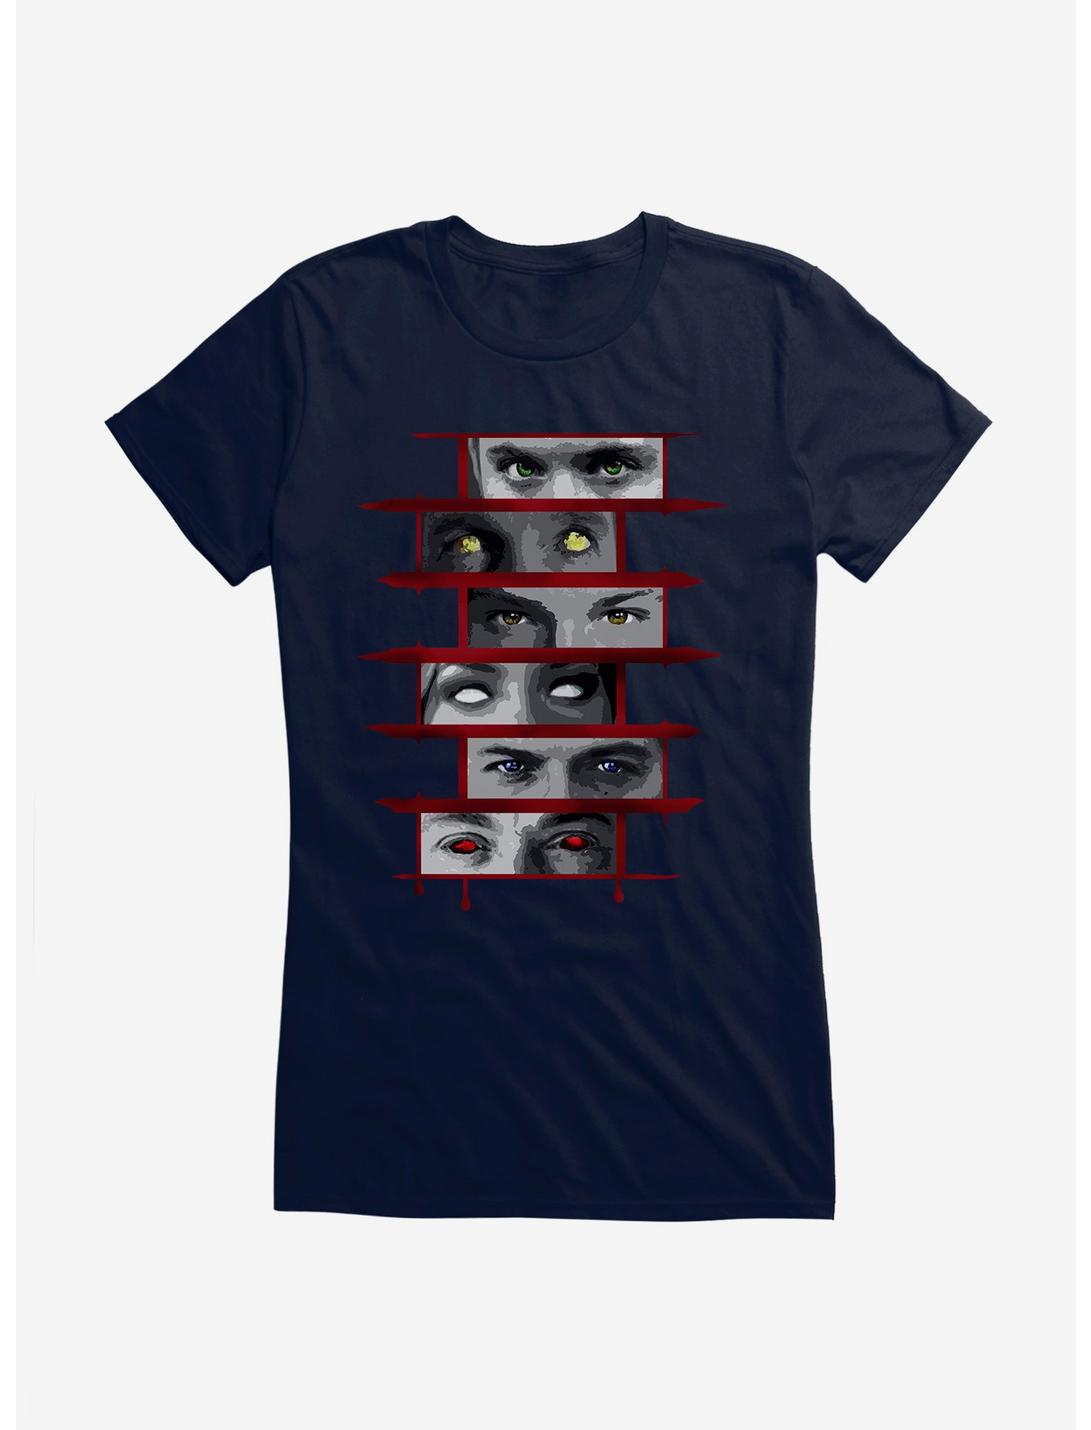 Supernatural Blood Pact Eyes Panels Girls T-Shirt, , hi-res